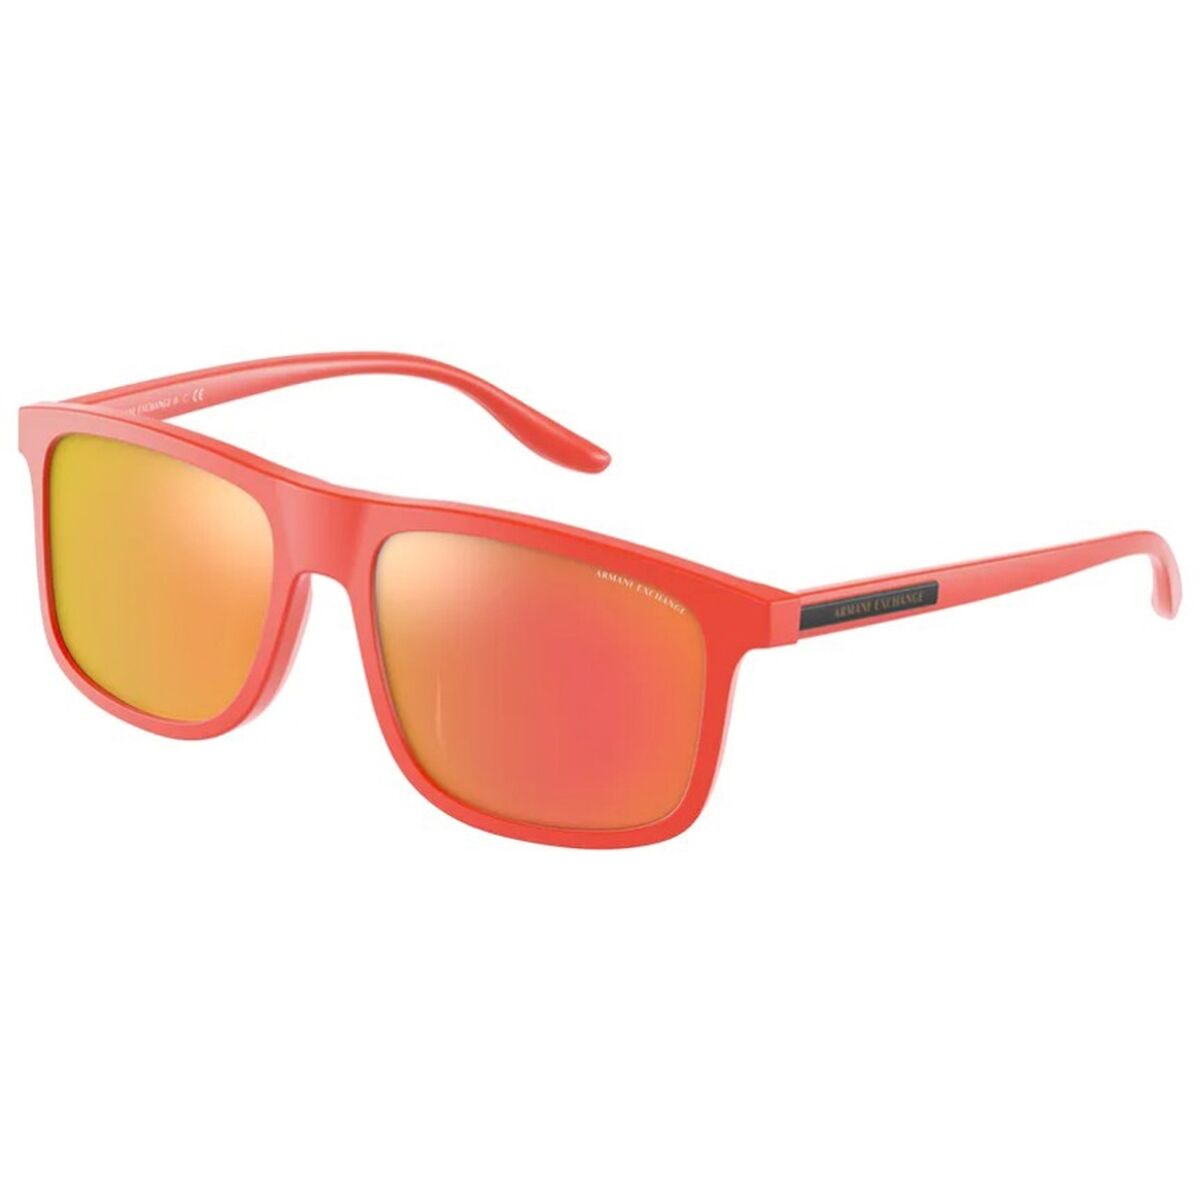 Ladies'Sunglasses Armani Exchange